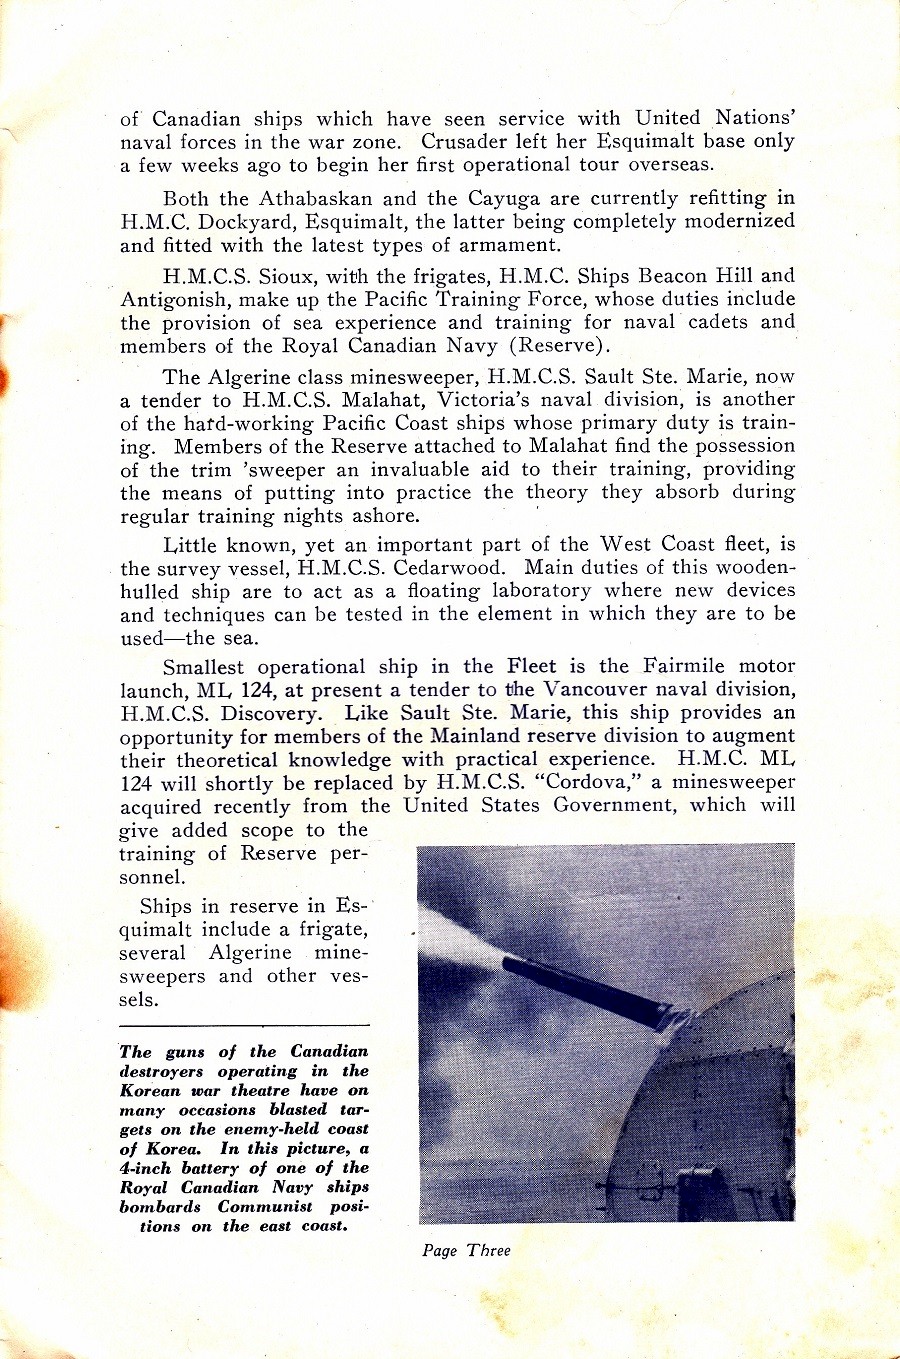 RCN NAVY DAYS 26 July 1952 - Page 3